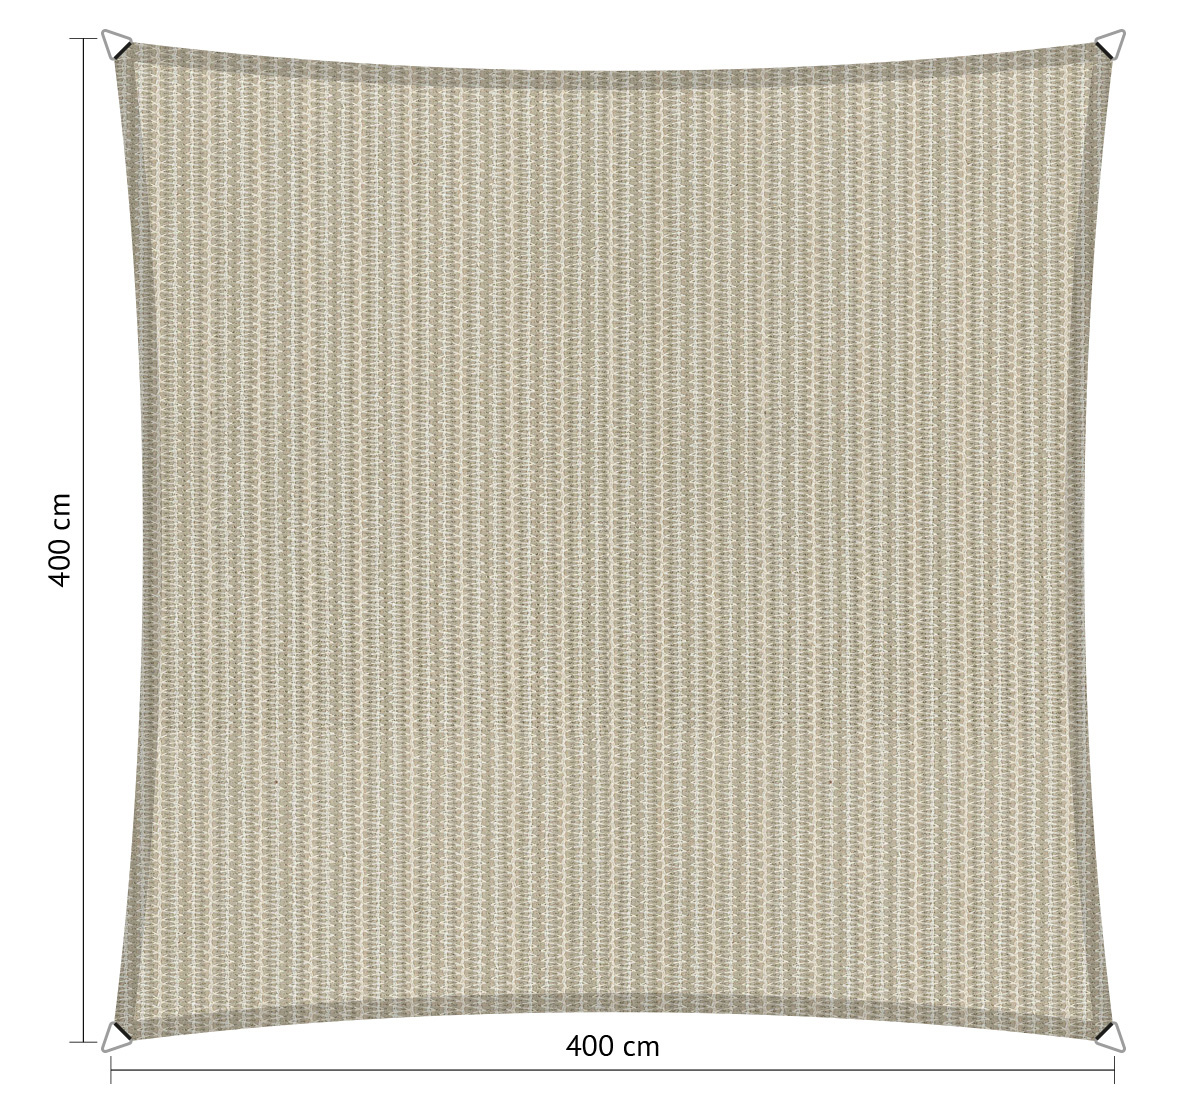 Boom zuur patroon Schaduwdoek Vierkant | 4x4 in Sahara Sand beige kopen